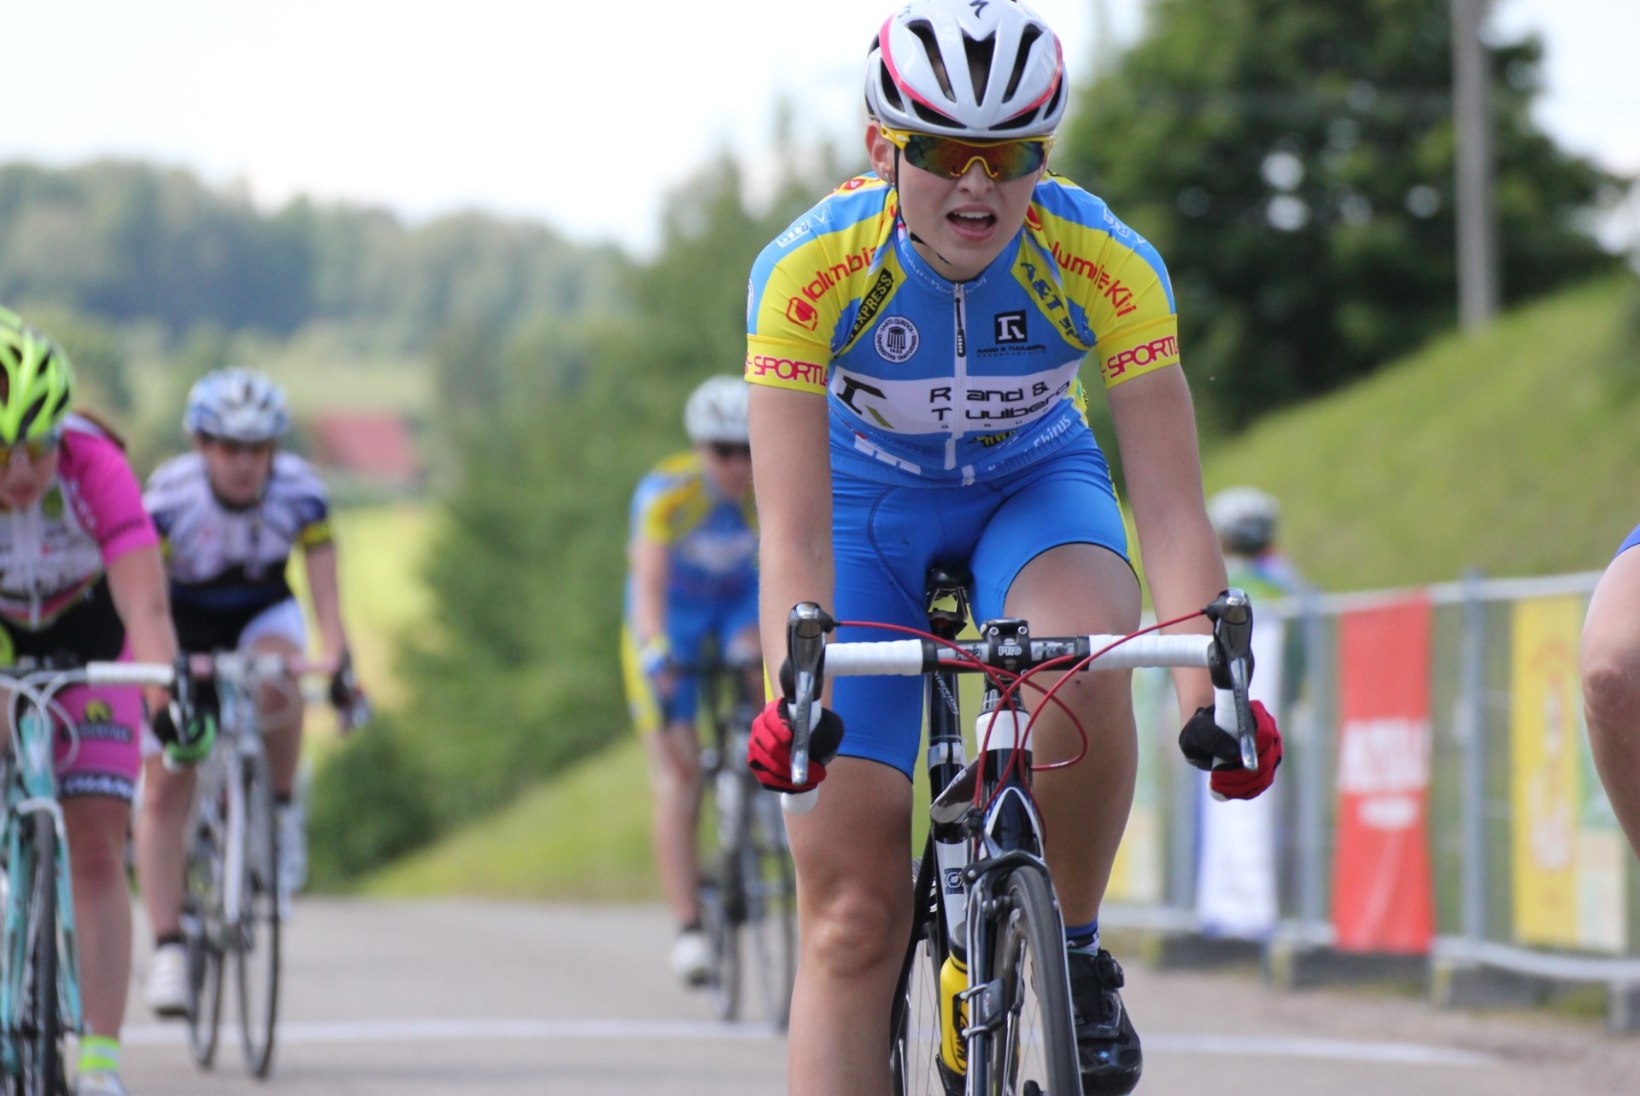 Eesti jalgratturid võistlevad noorte olümpiamängudel uue ja põneva võistlusformaadi järgi